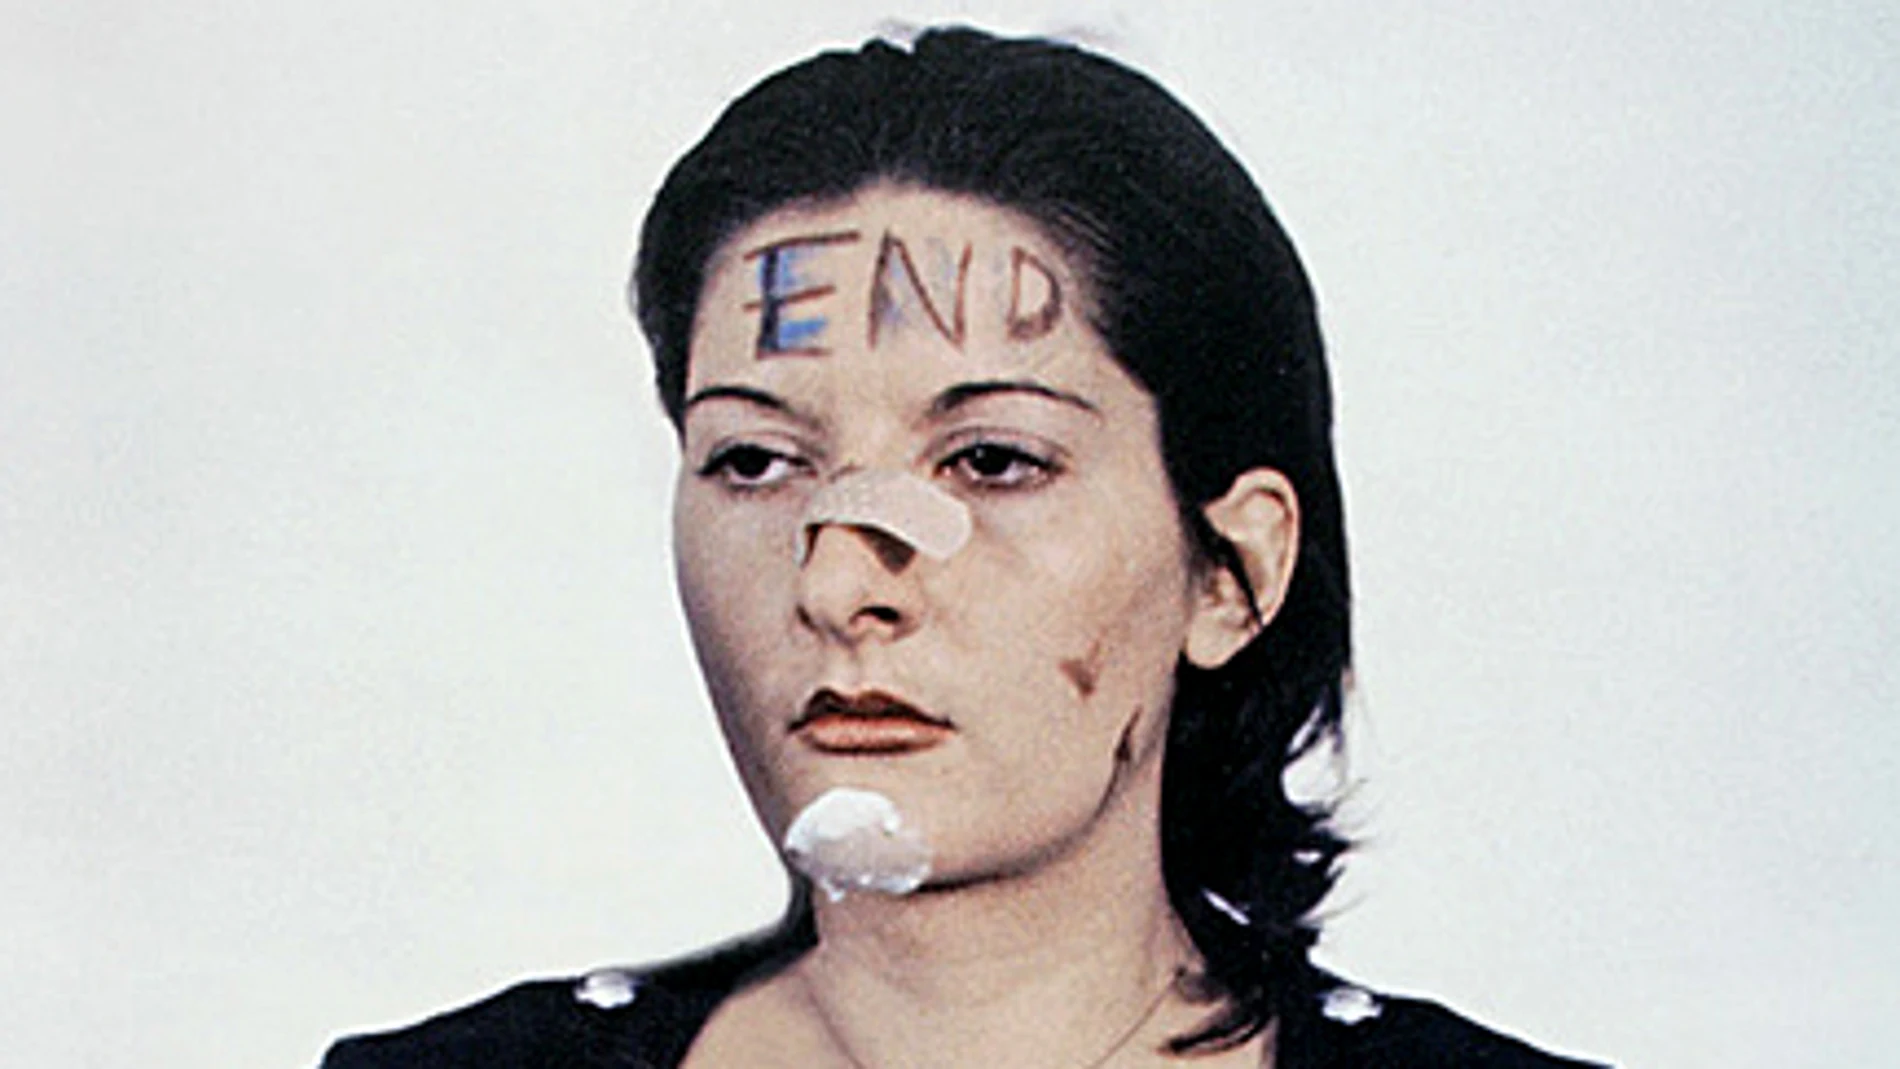 Marina Abramović, durante la performance de 6 horas "Rhythm 0", donde fue atacada, humillada y dañada